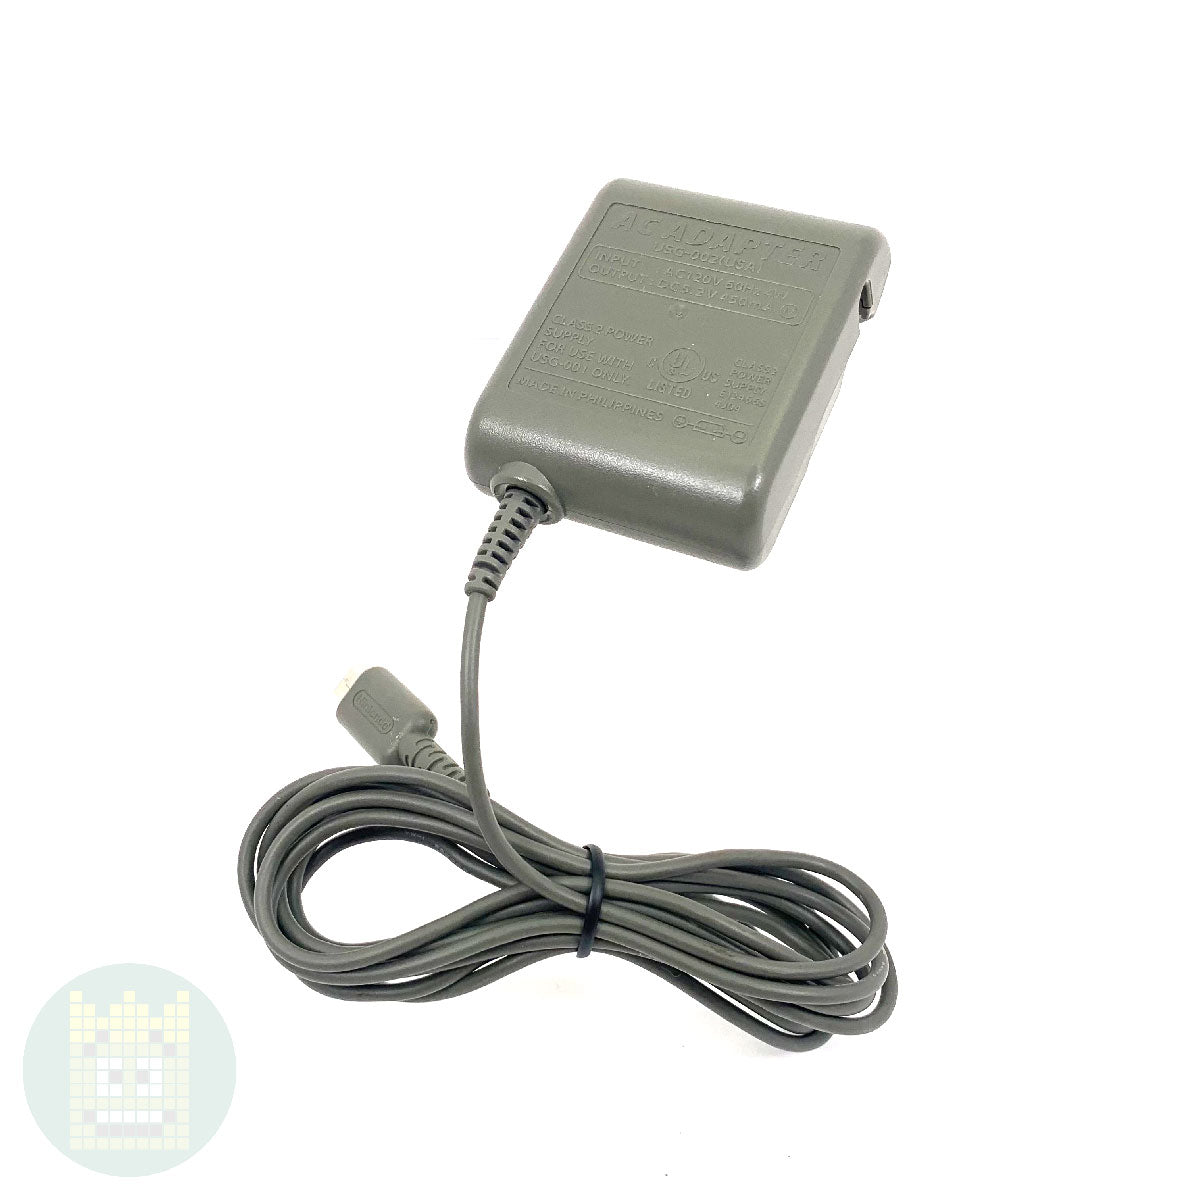 Original AC Adapter for Nintendo DS Lite USG-002